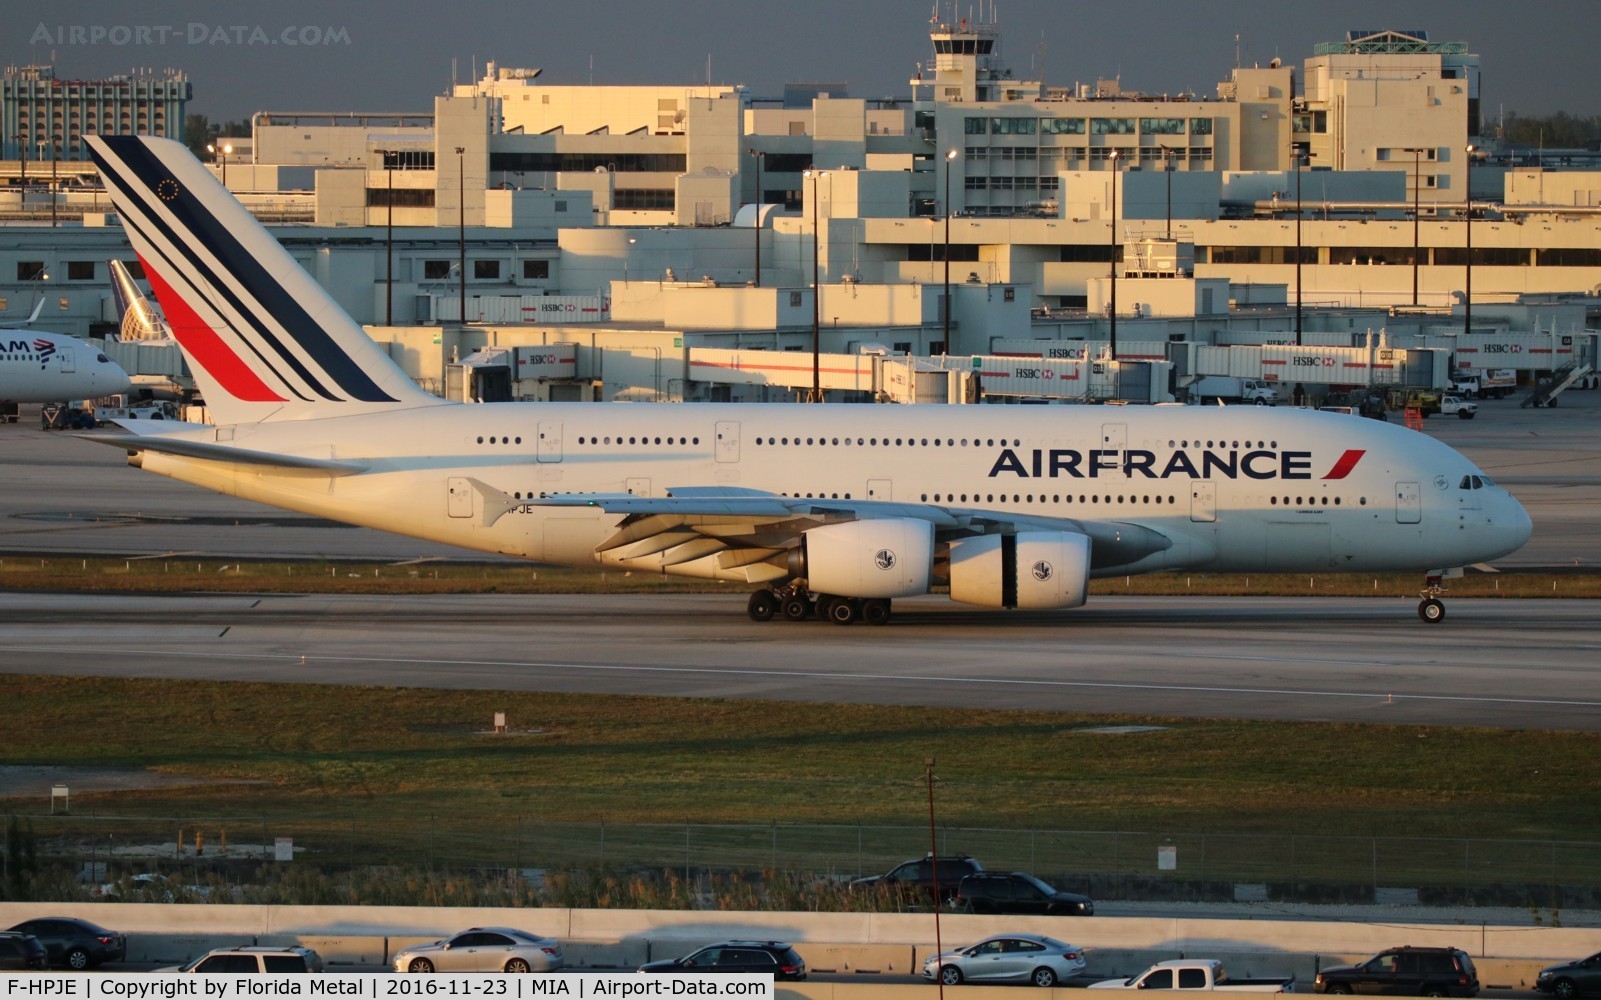 F-HPJE, 2010 Airbus A380-861 C/N 052, Air France